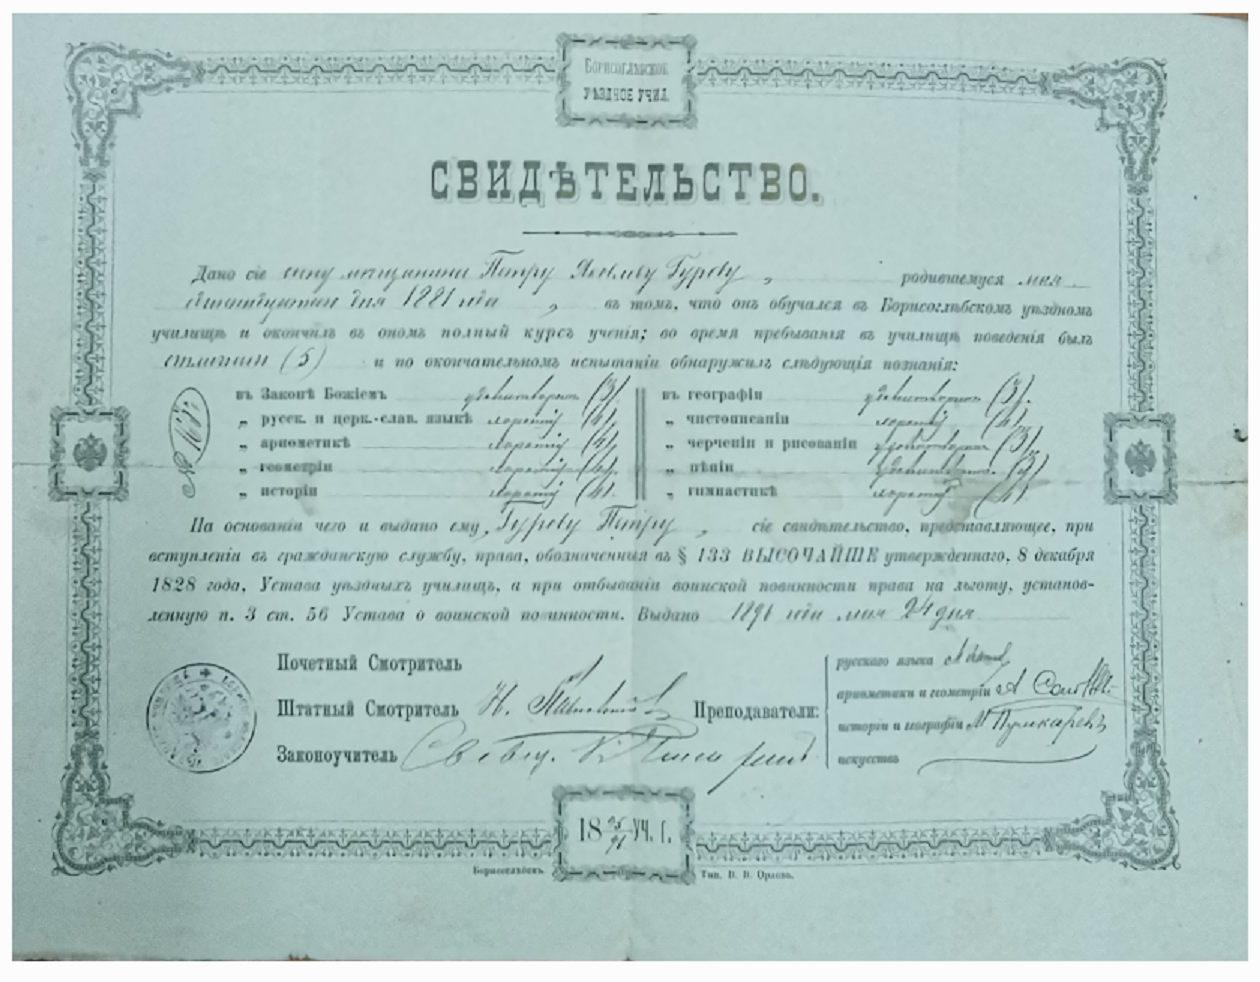 Свидетельство от 24 мая 1896 года, выданное Гурову П.Я. об окончании Борисоглебского уездного училища.